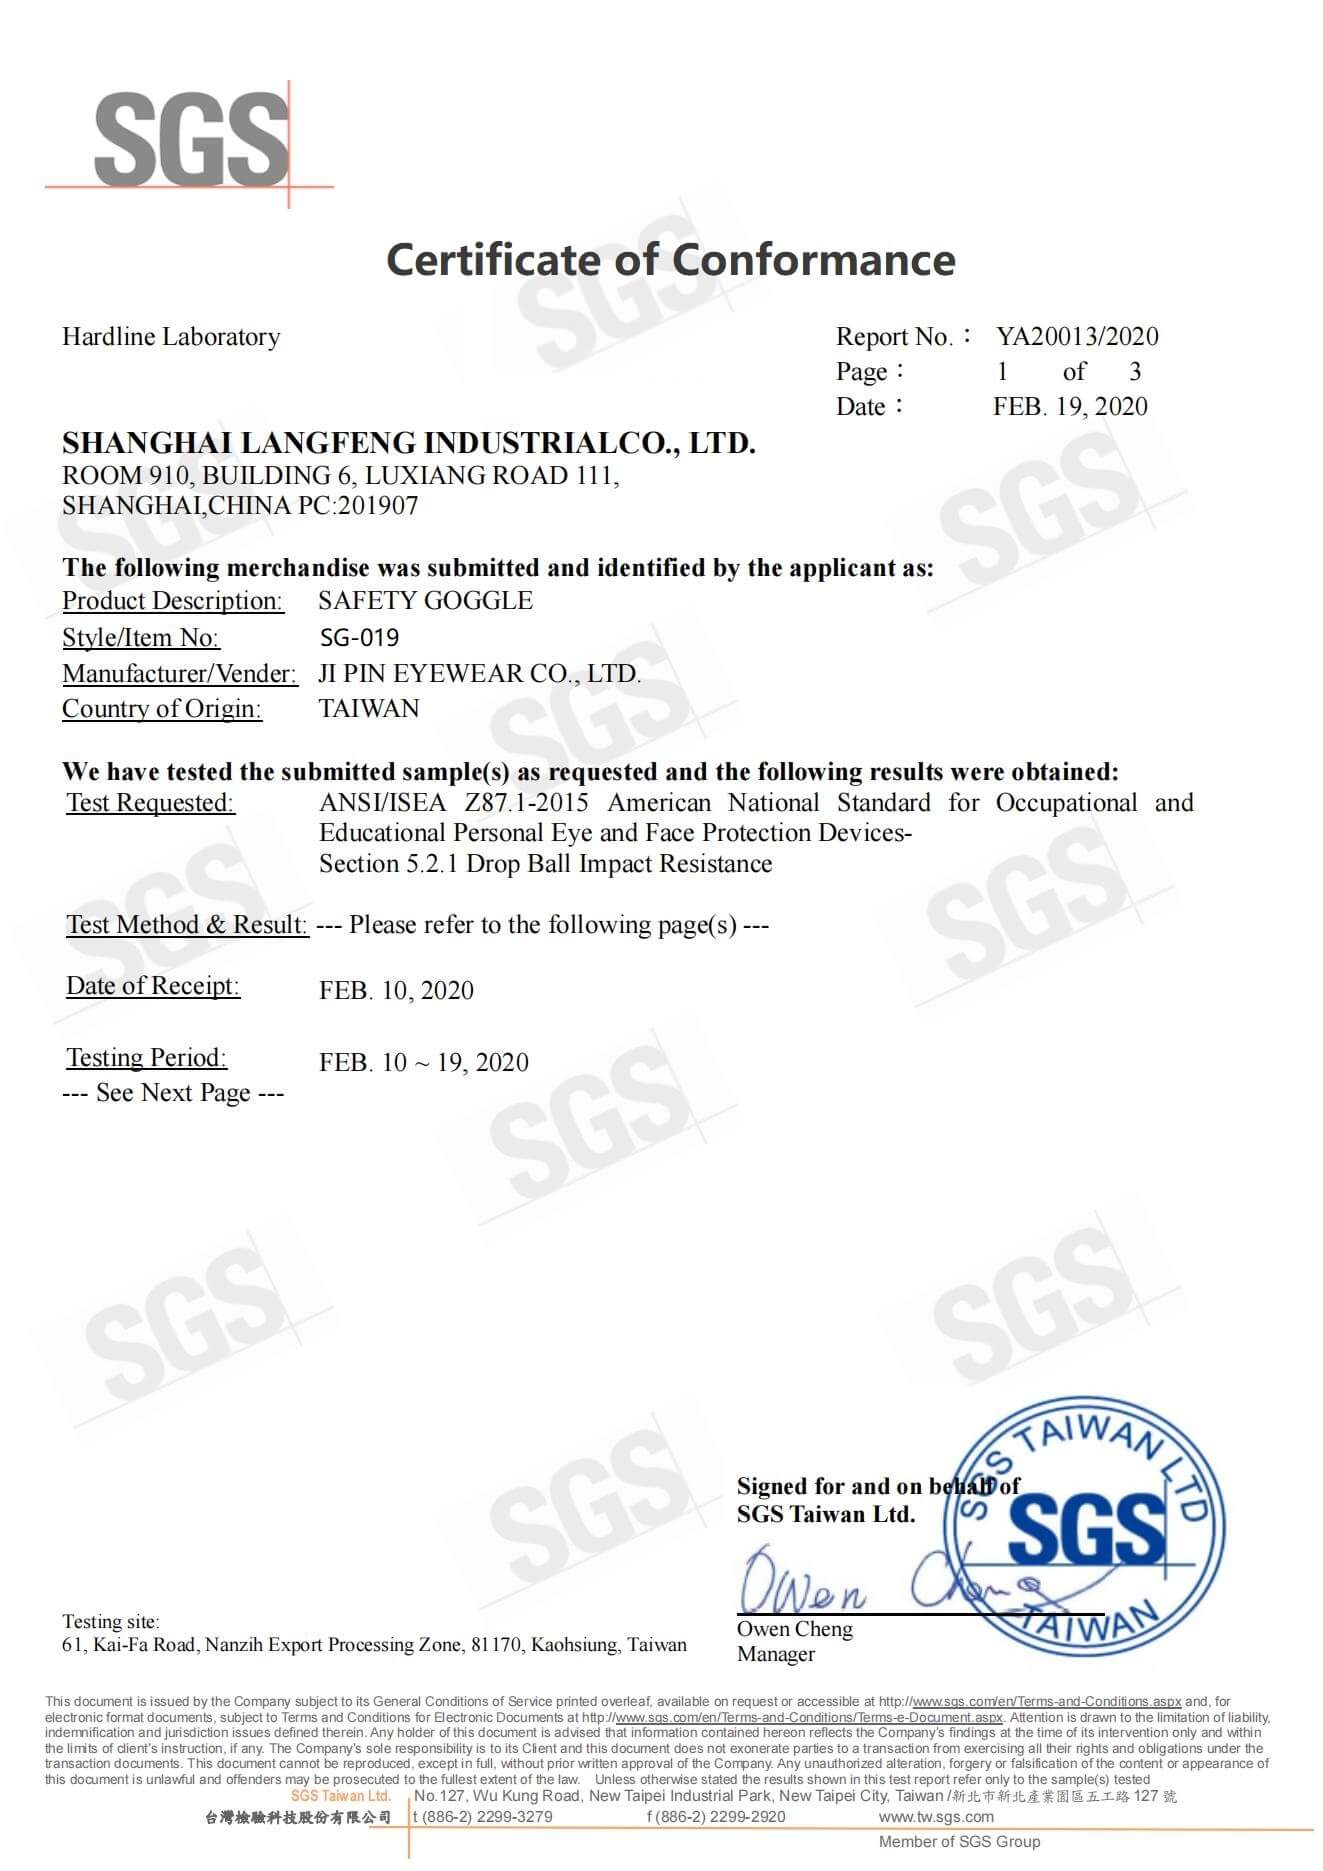 SG019 US-ANSI-Zertifizierung